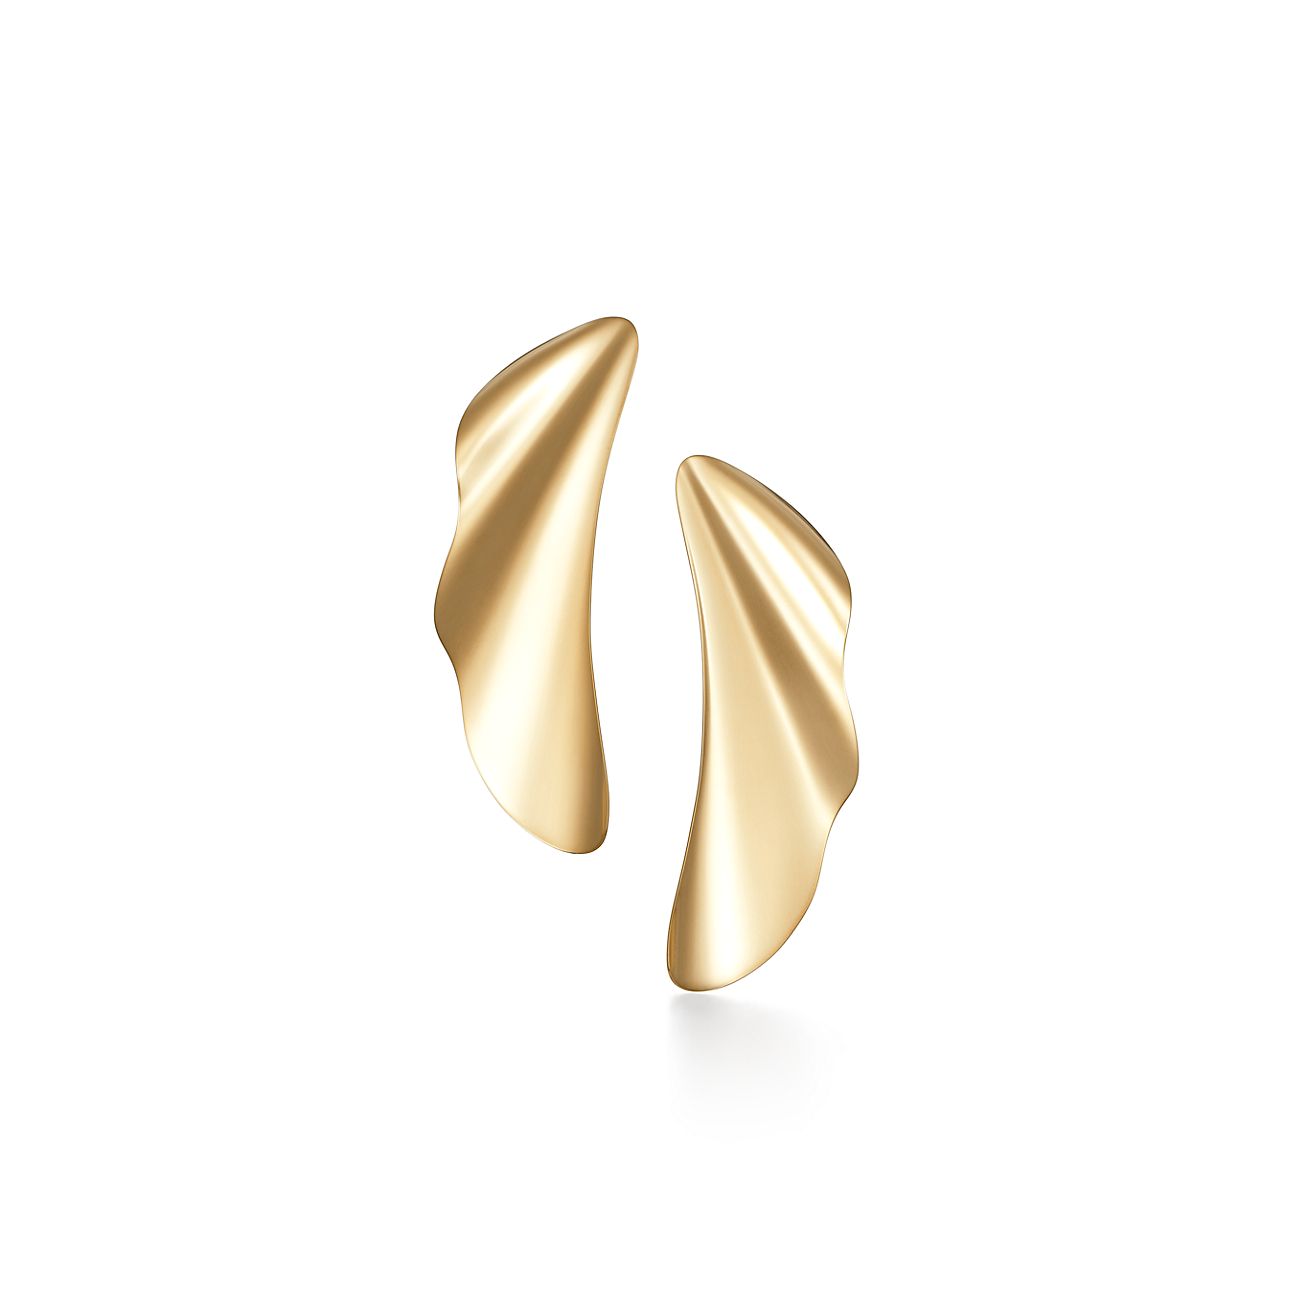 エルサ・ペレッティ™:ハイ タイド ピアス 18Kゴールド | Tiffany & Co.